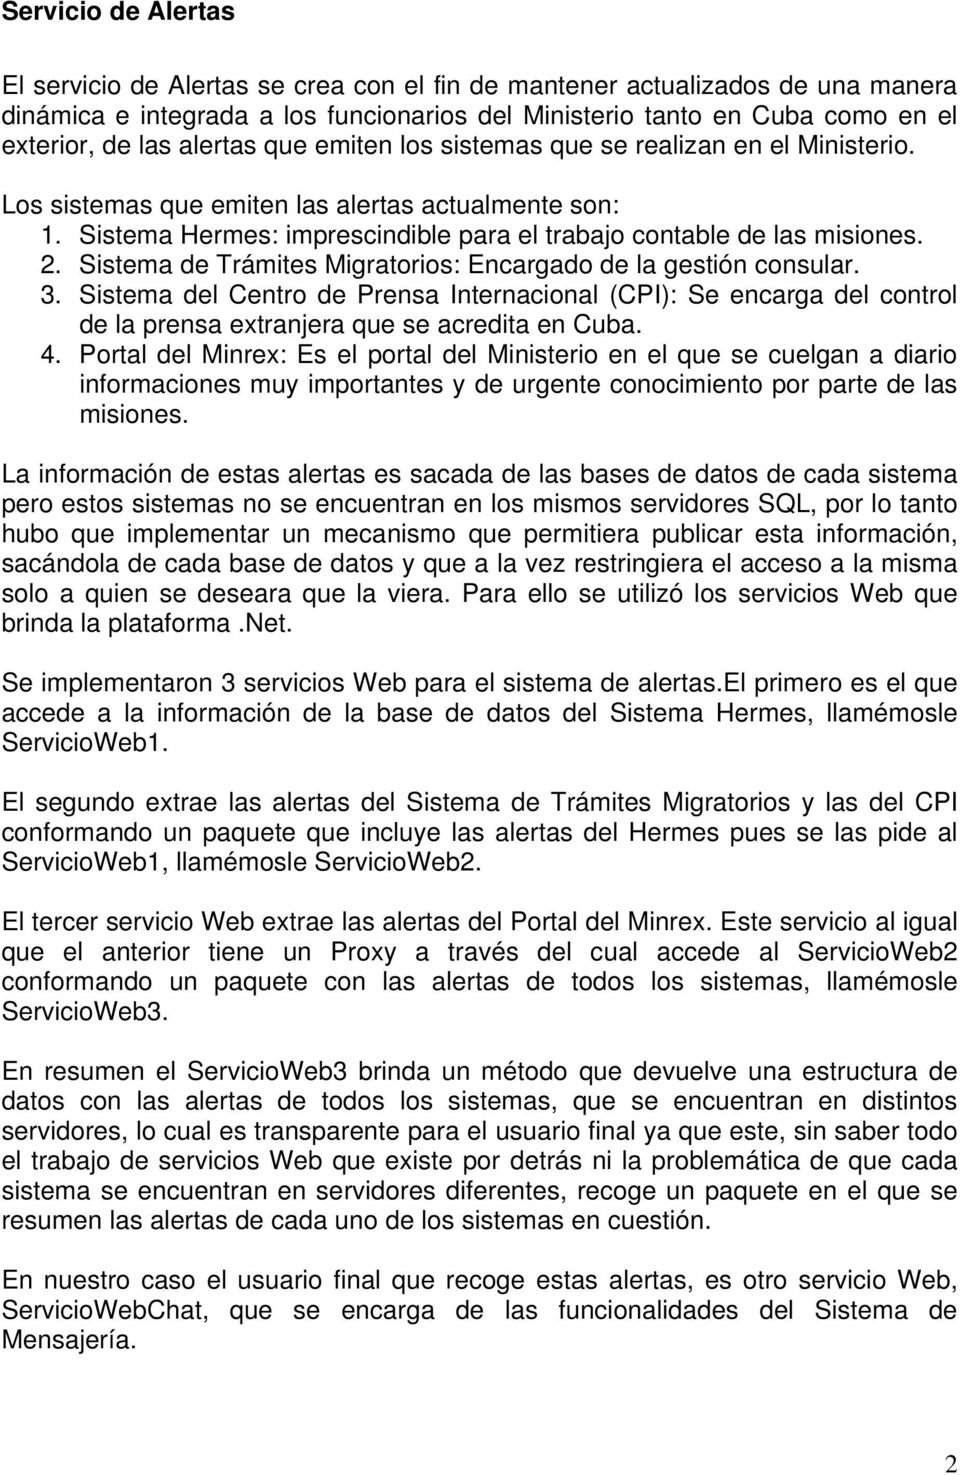 Sistema de Trámites Migratorios: Encargado de la gestión consular. 3. Sistema del Centro de Prensa Internacional (CPI): Se encarga del control de la prensa extranjera que se acredita en Cuba. 4.